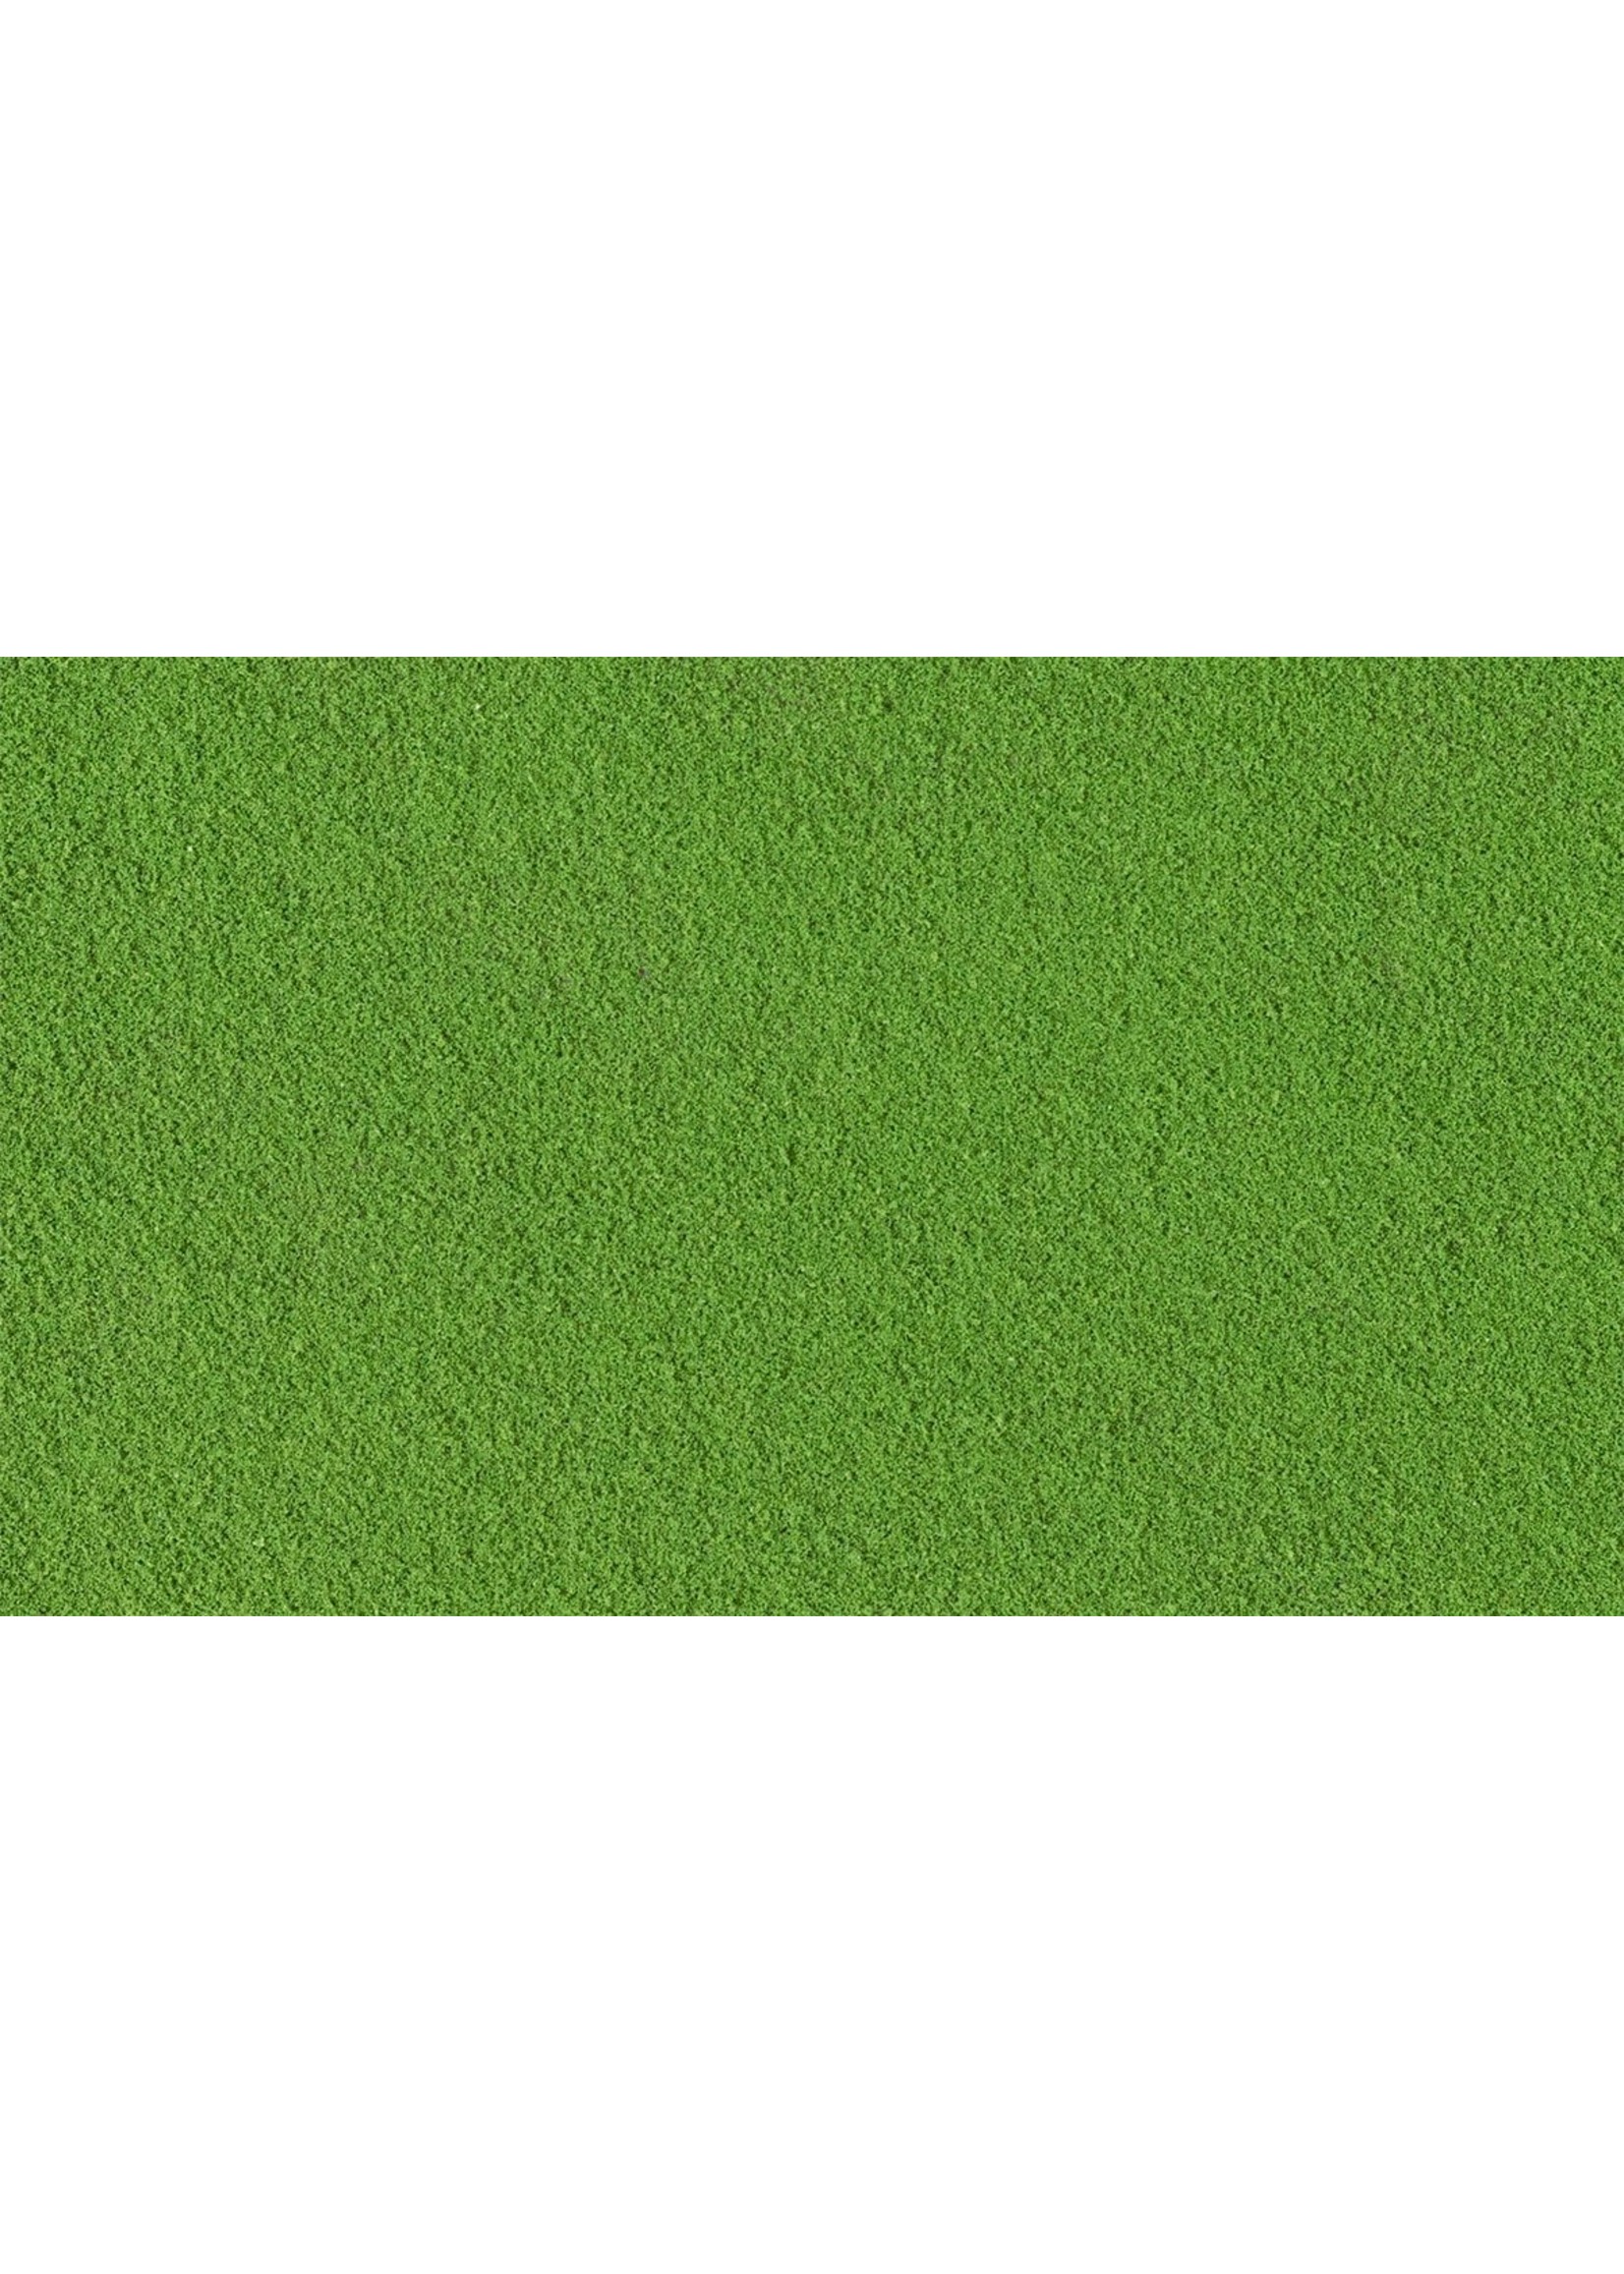 Woodland Scenics T45 - Fine Turf Bag, 21.6 cu. in. - Green Grass